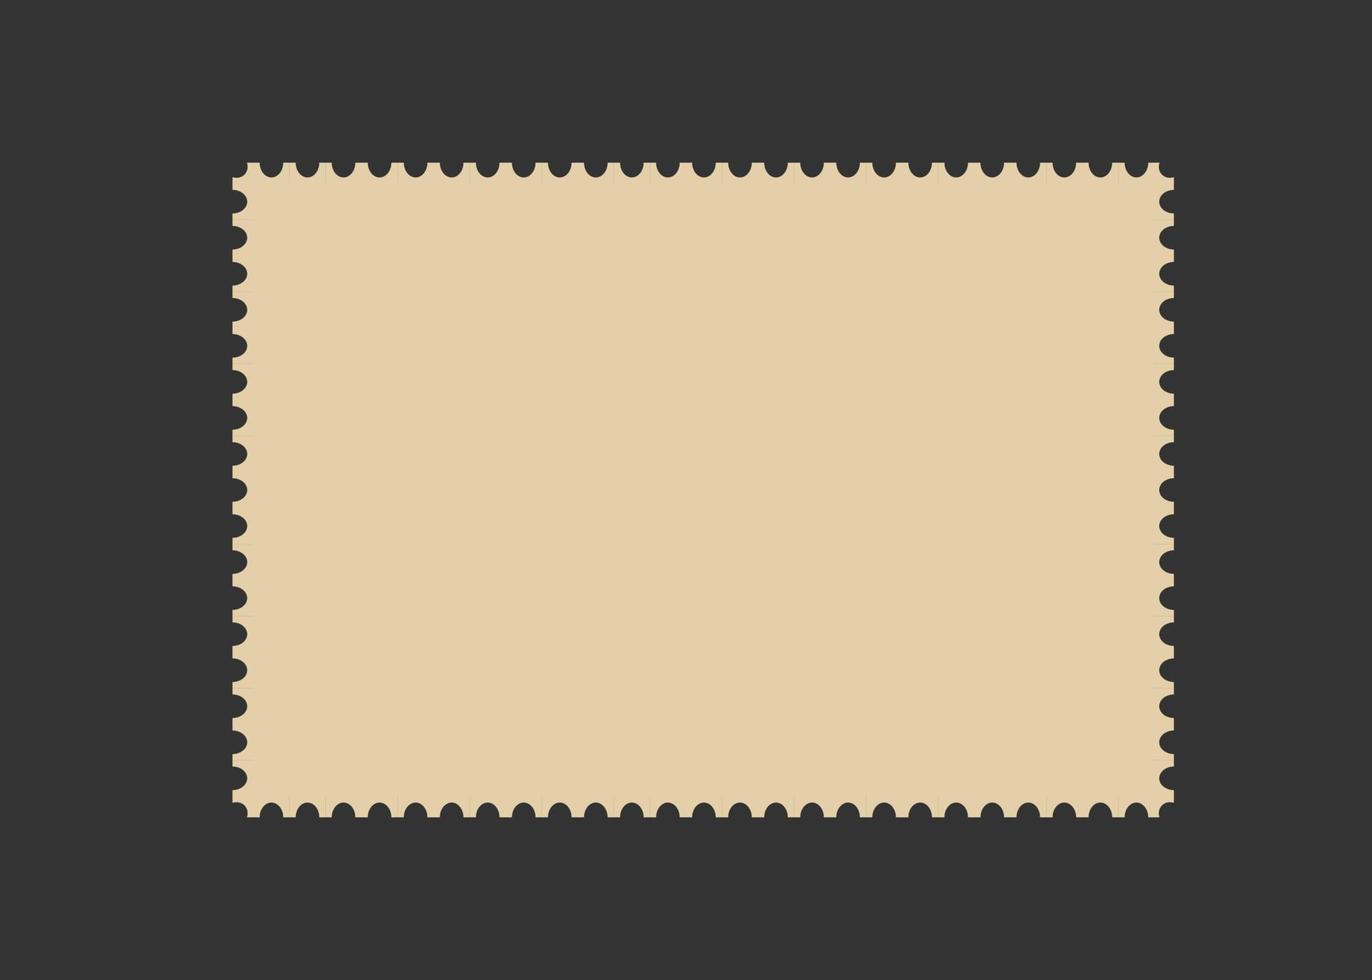 moldura de selo postal. modelo de borda vazia para cartões postais e cartas. retângulo em branco e selo quadrado com borda perfurada. ilustração vetorial isolada em fundo preto vetor